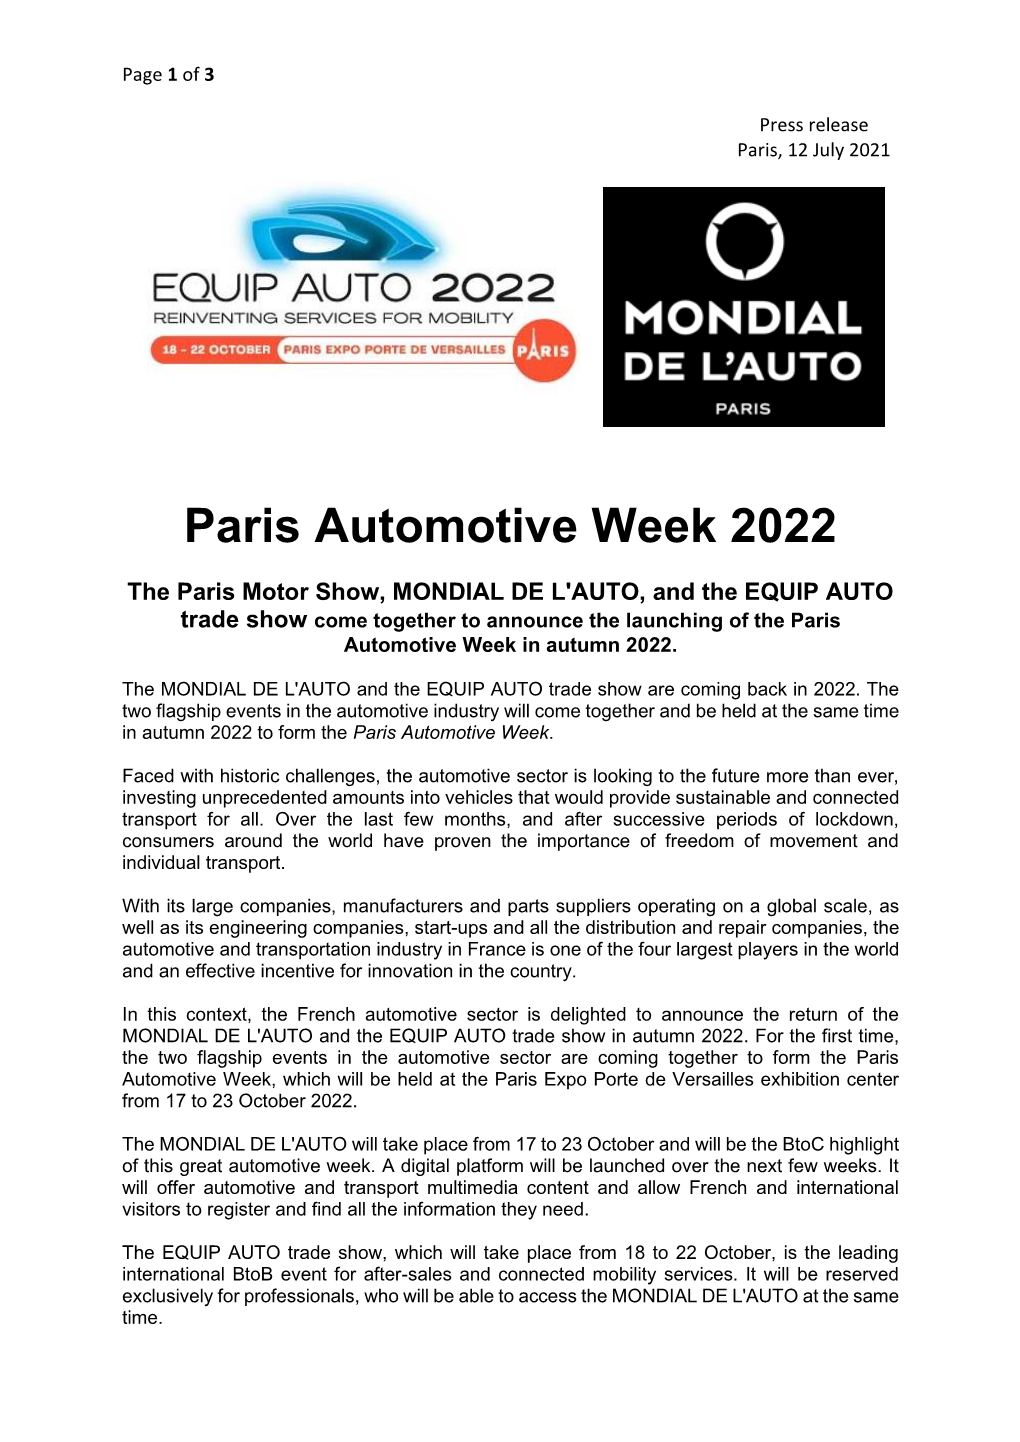 Paris Automotive Week 2022